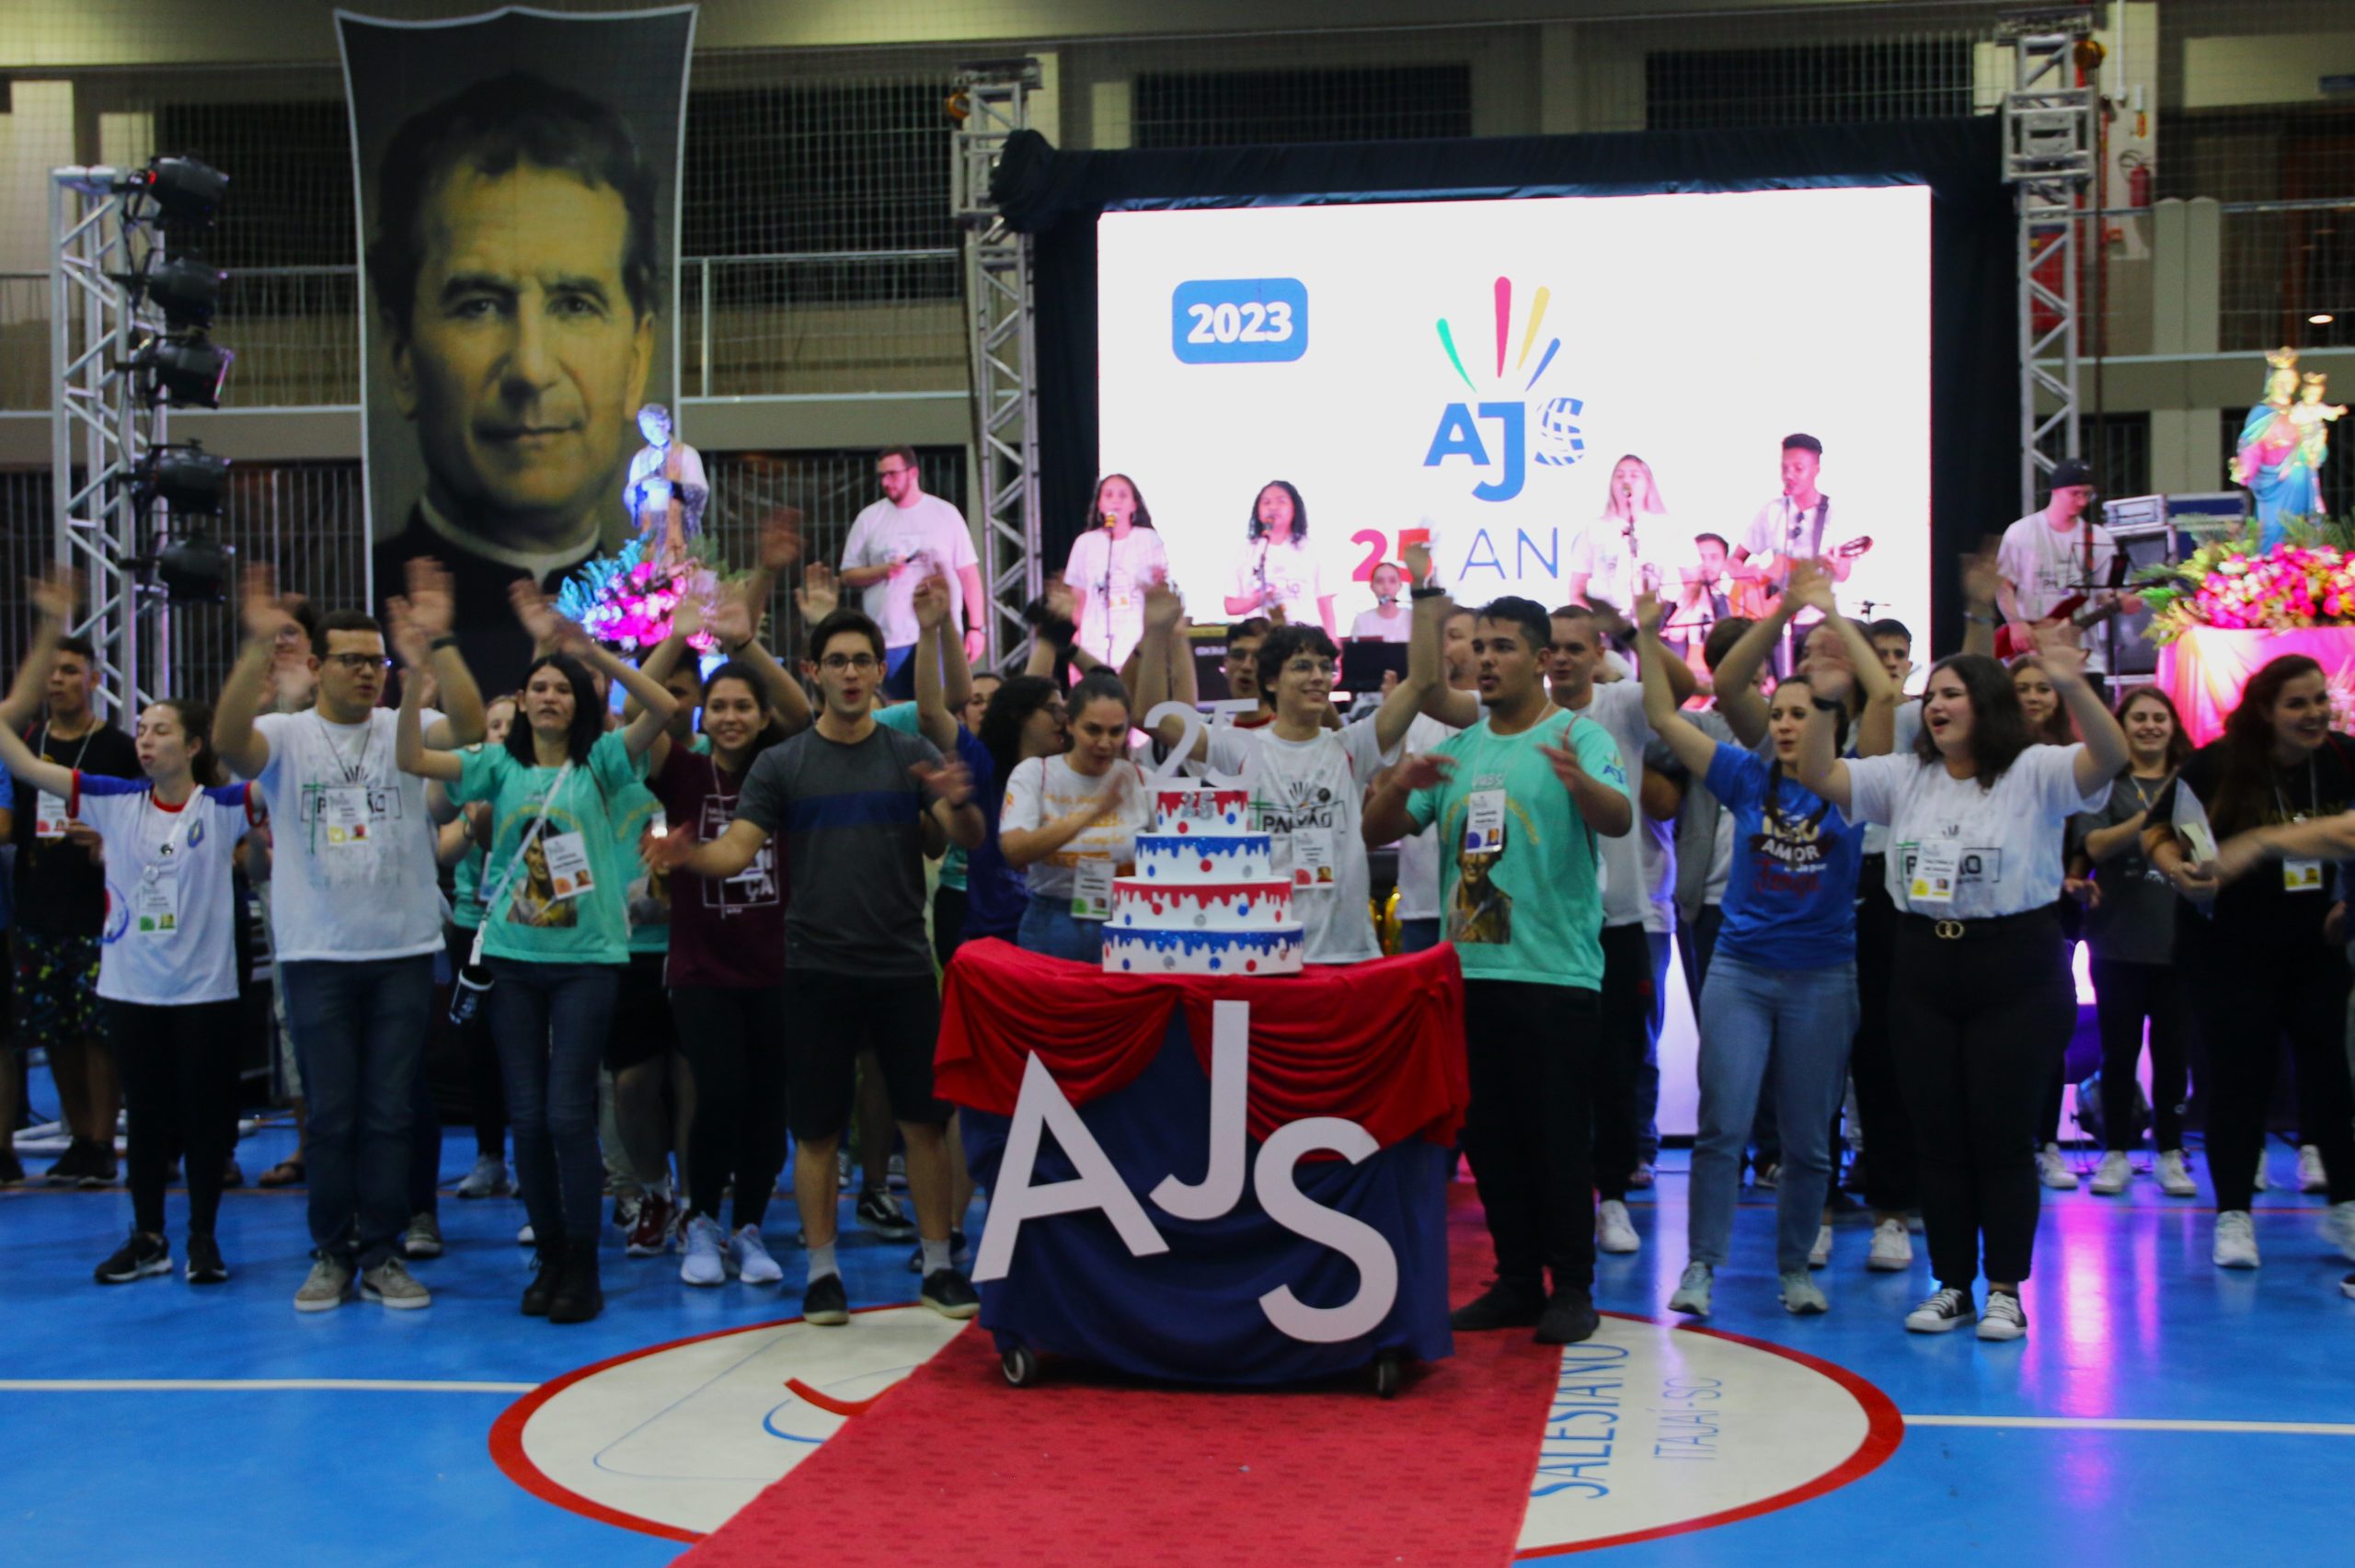 Sul do Brasil festeja 25 anos da AJS com mais 300 jovens em Congresso